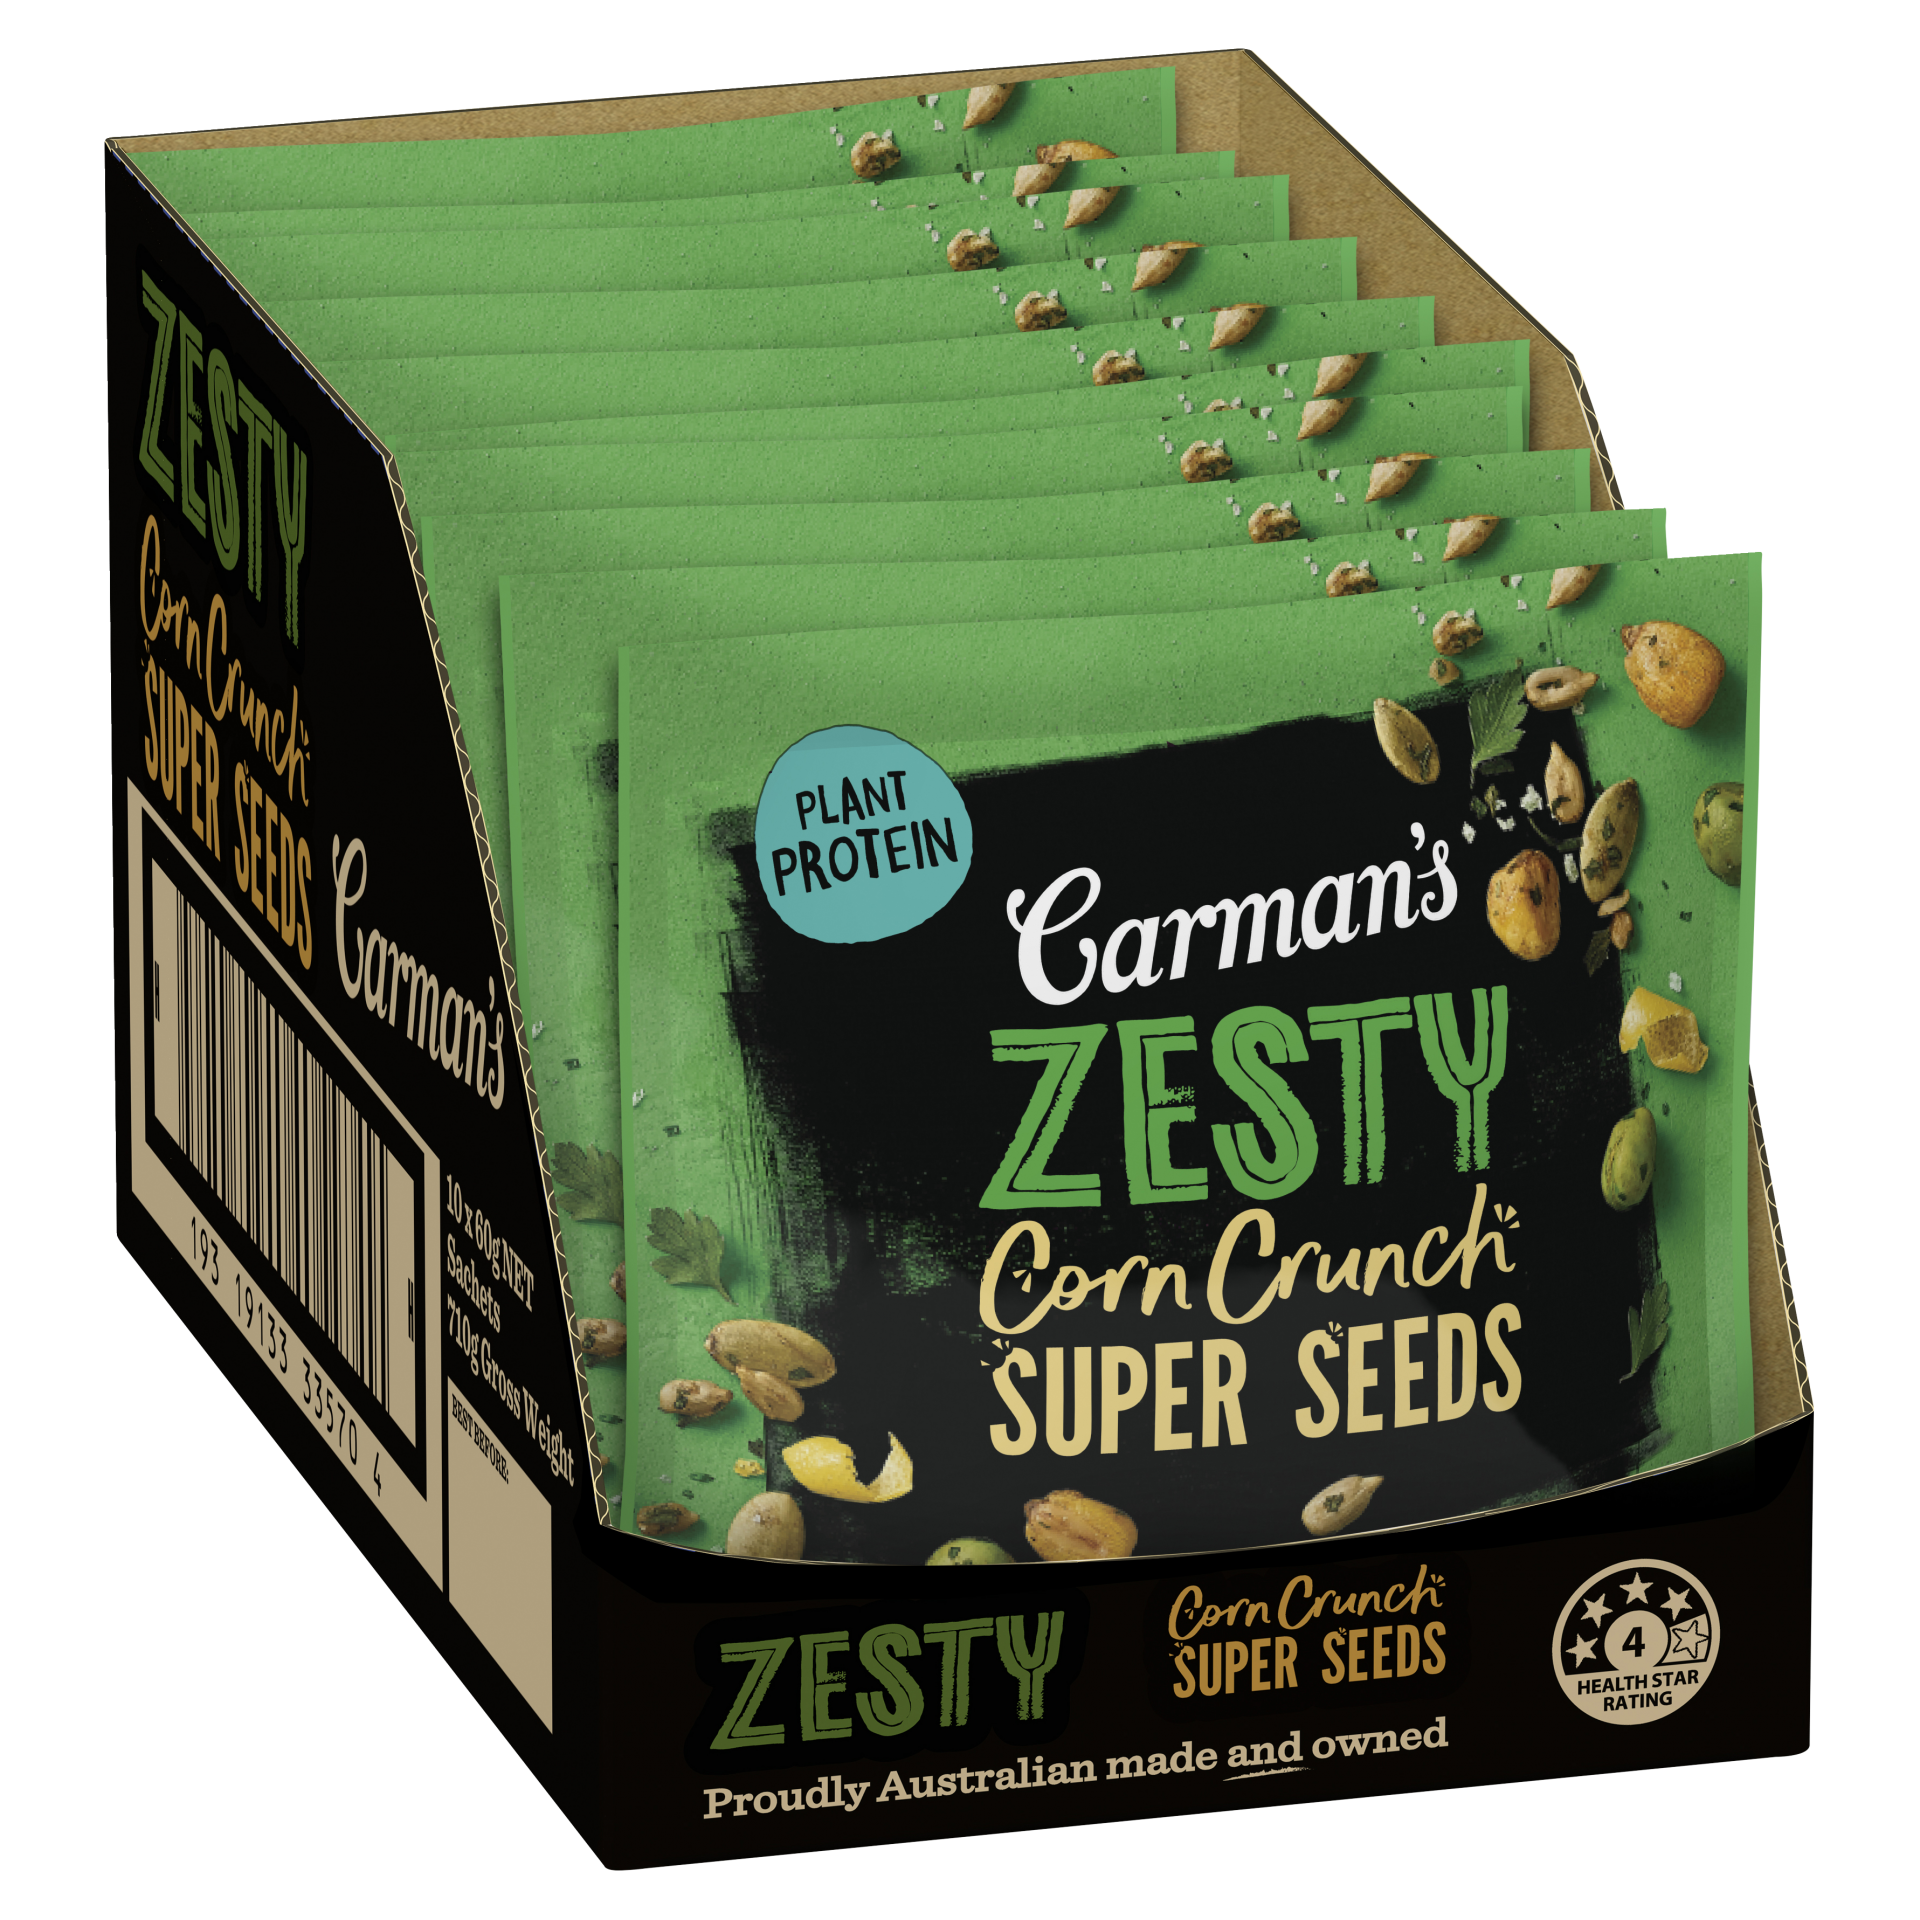 Zesty Corn Crunch Super Seeds